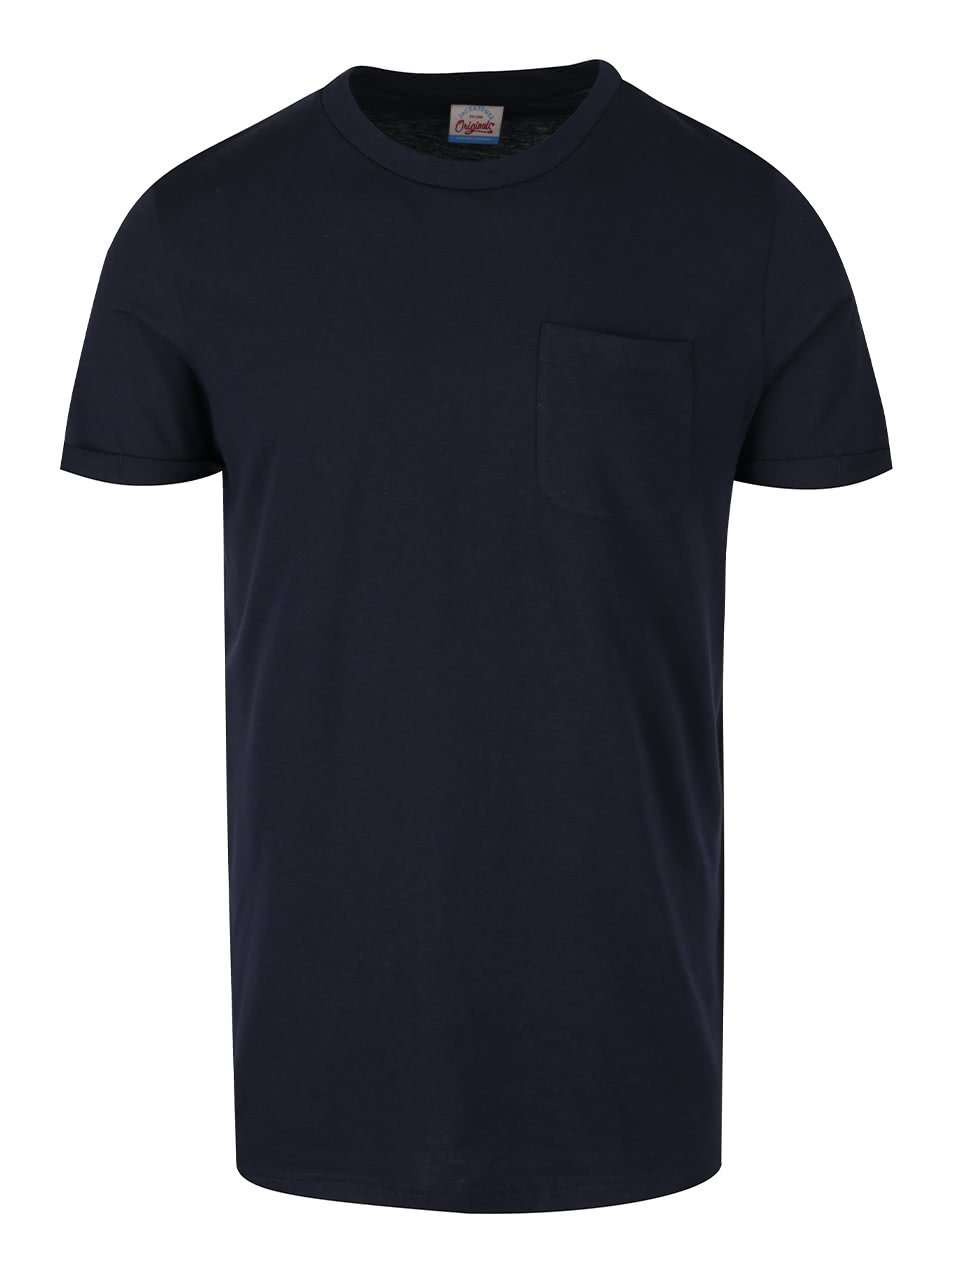 Tmavě modré triko s kapsou a krátkým rukávem Jack & Jones Design